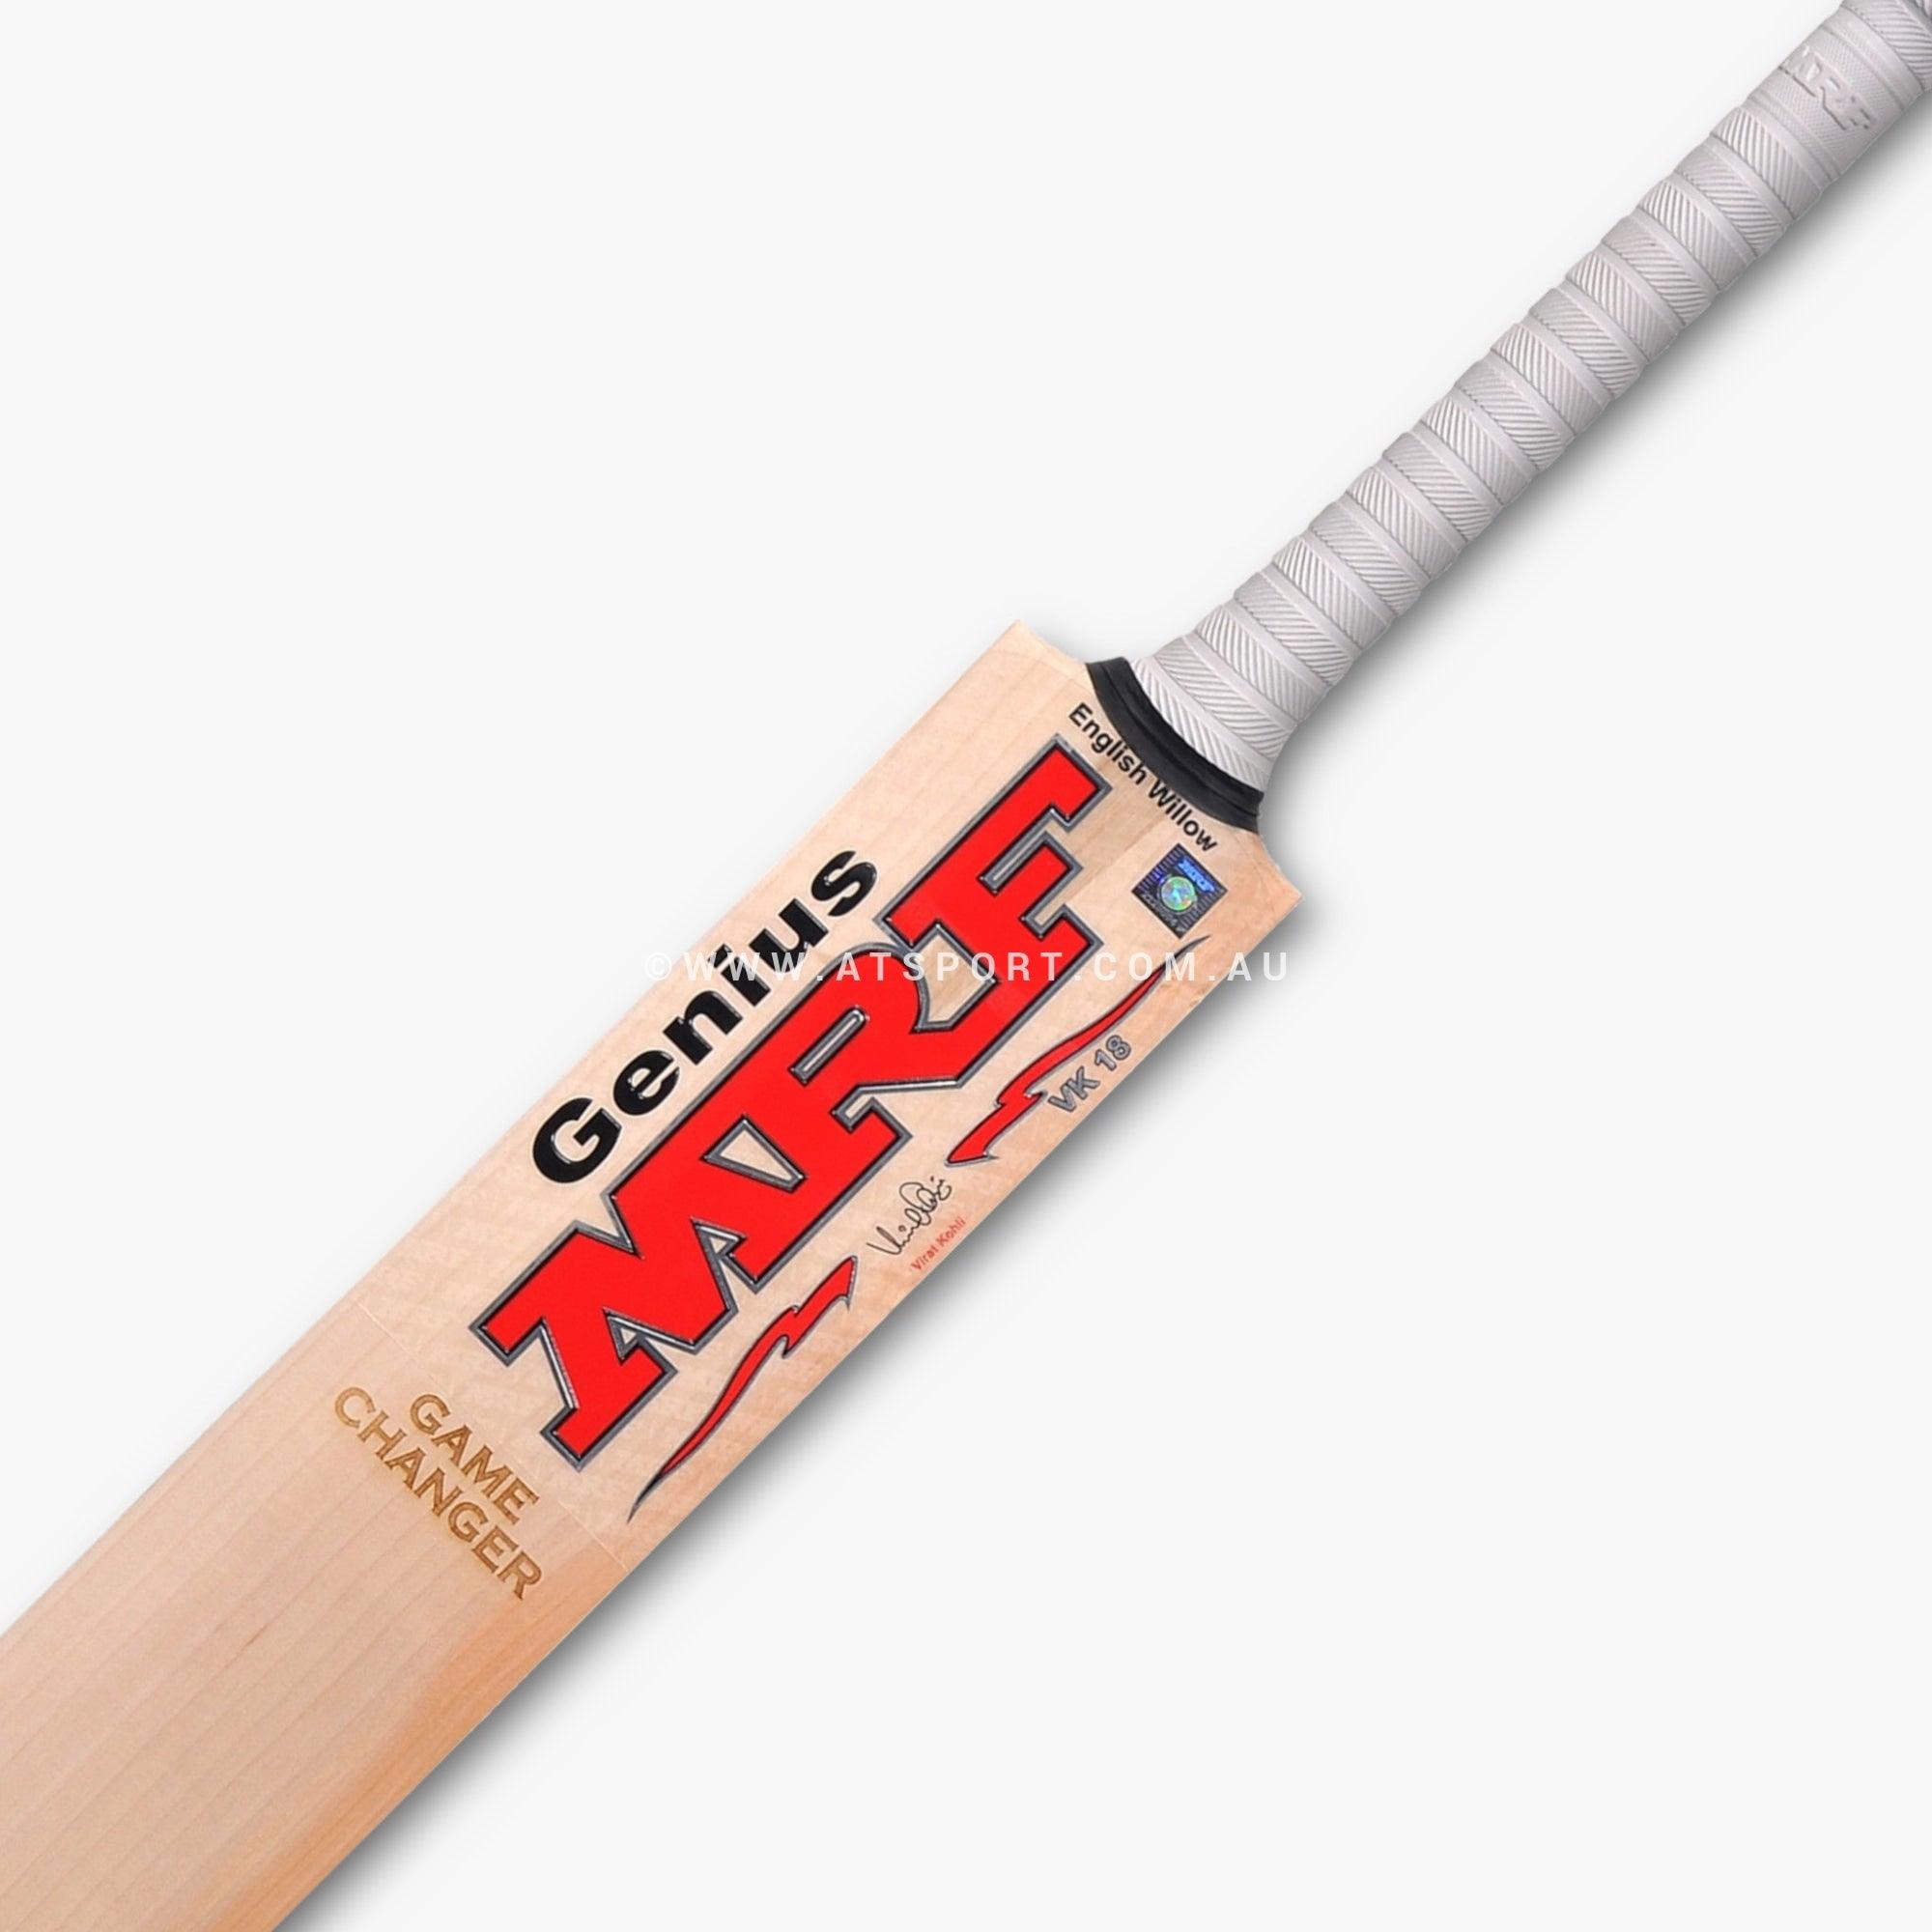 MRF Game Changer Virat Kohli PLAYERS English Willow Cricket Bat - SH - AT Sports